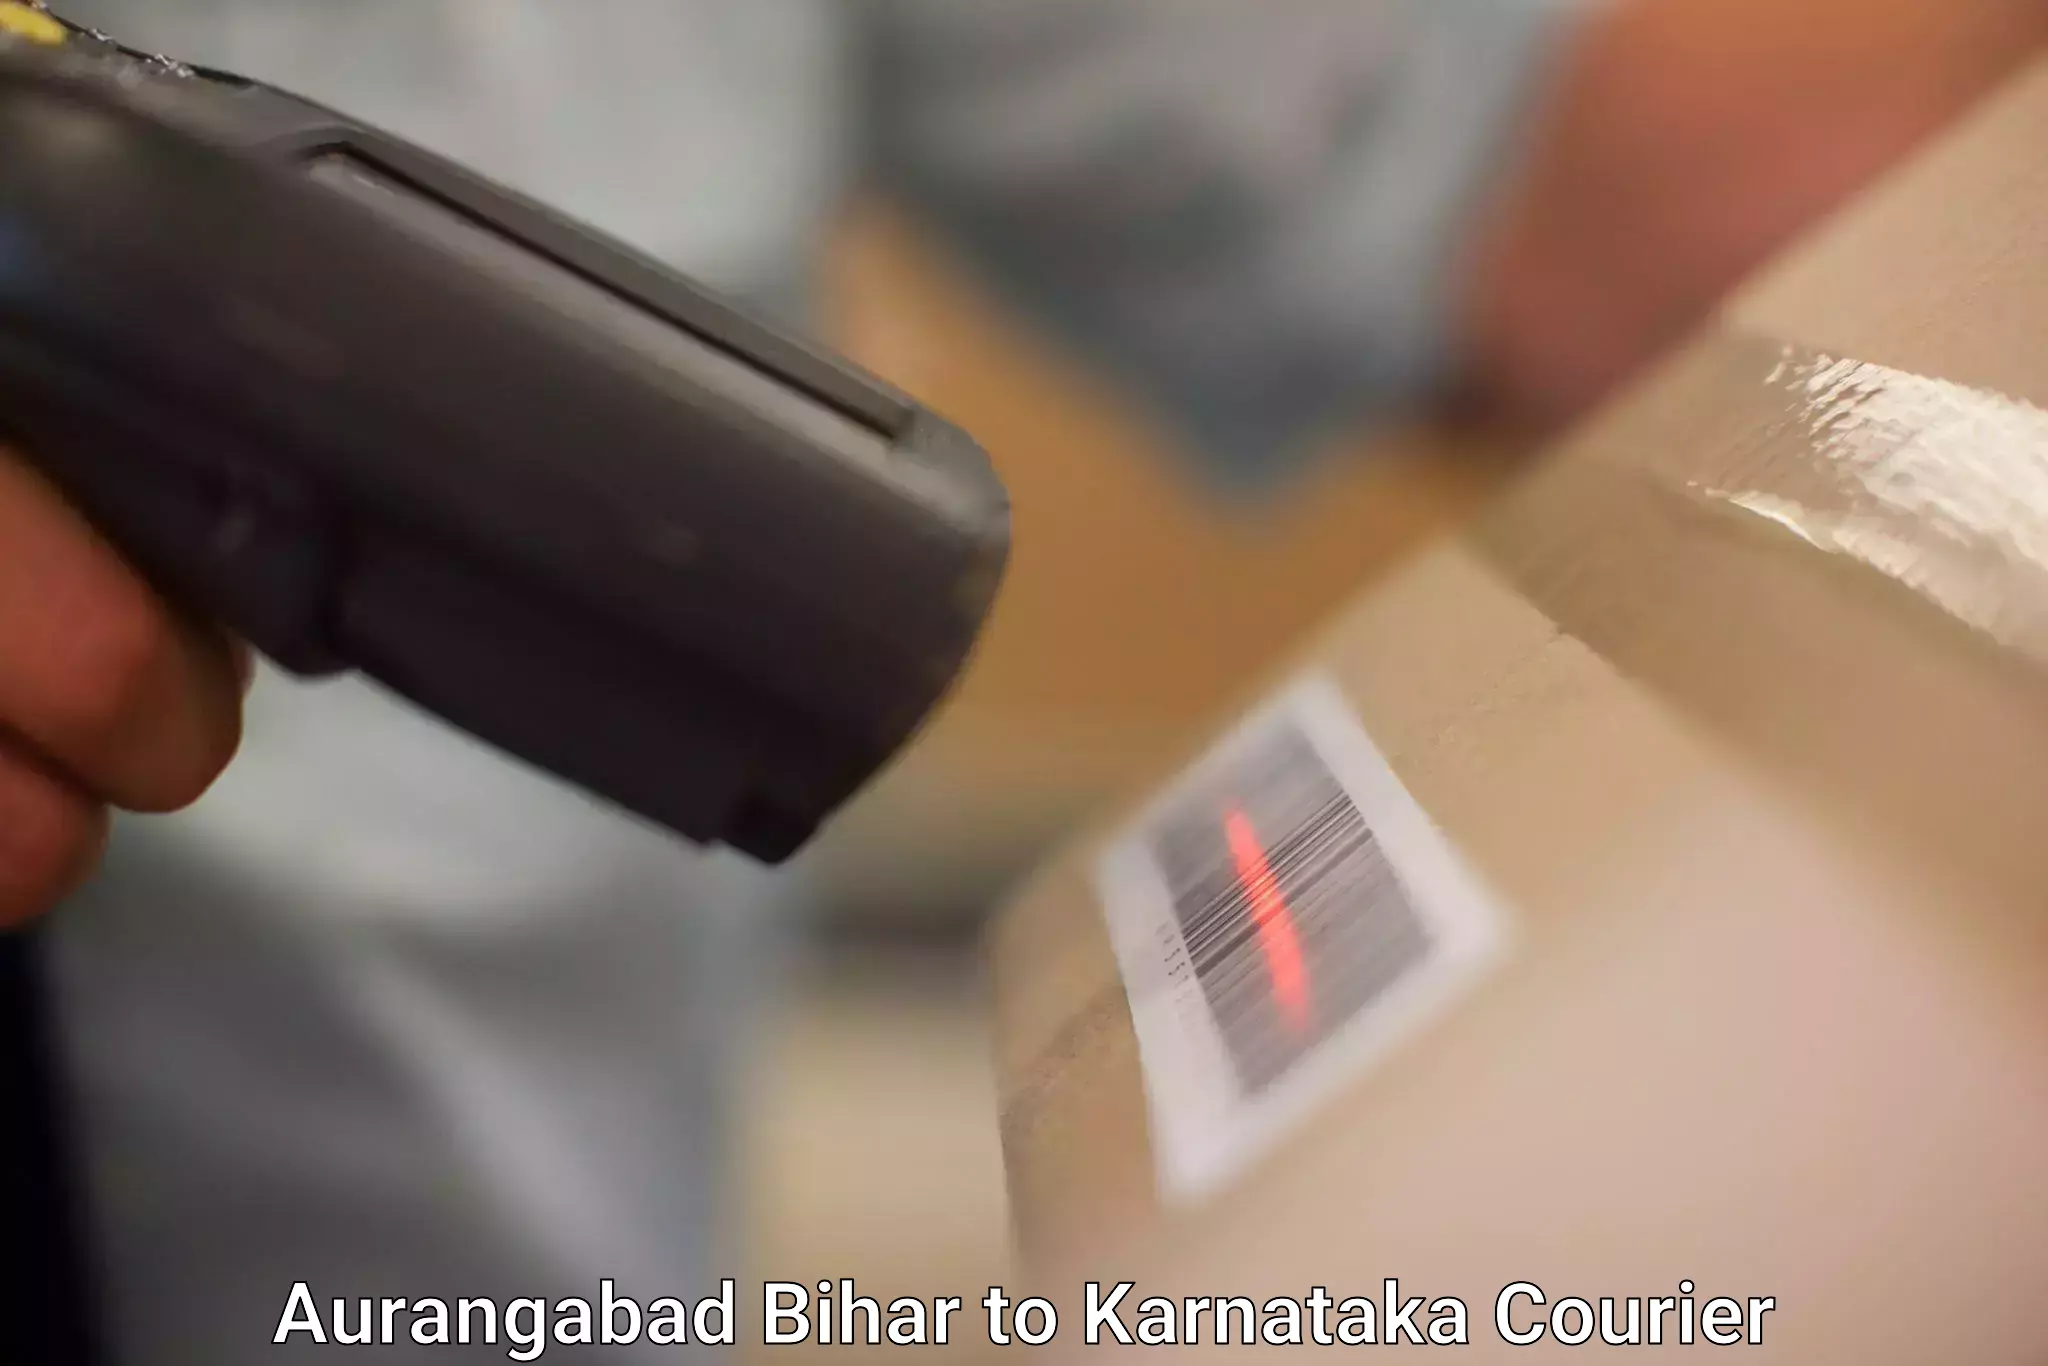 Online courier booking Aurangabad Bihar to Kodagu